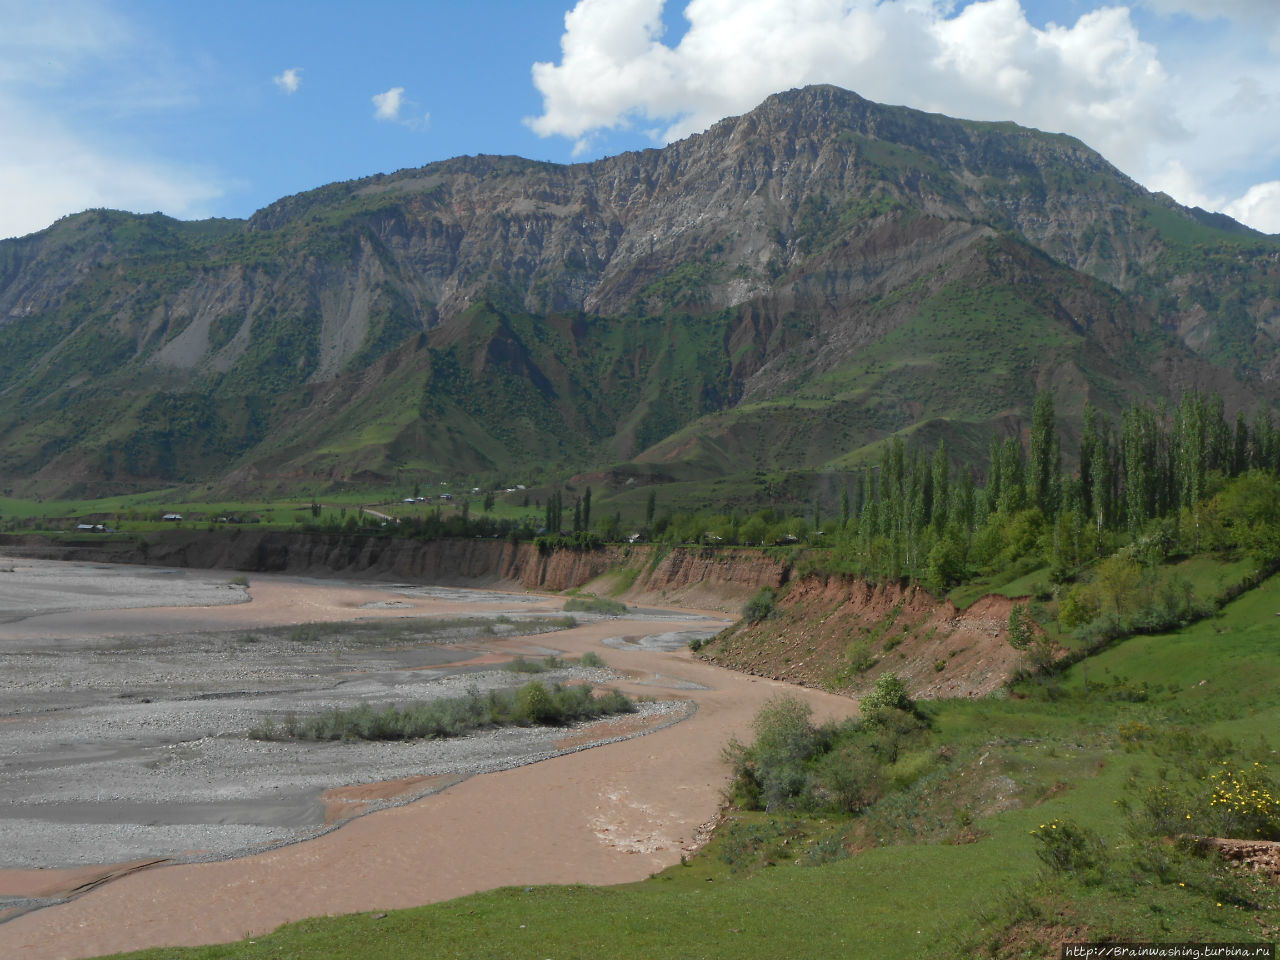 Автостопом по Памирскому тракту. Часть 1. Горно-Бадахшанская область, Таджикистан